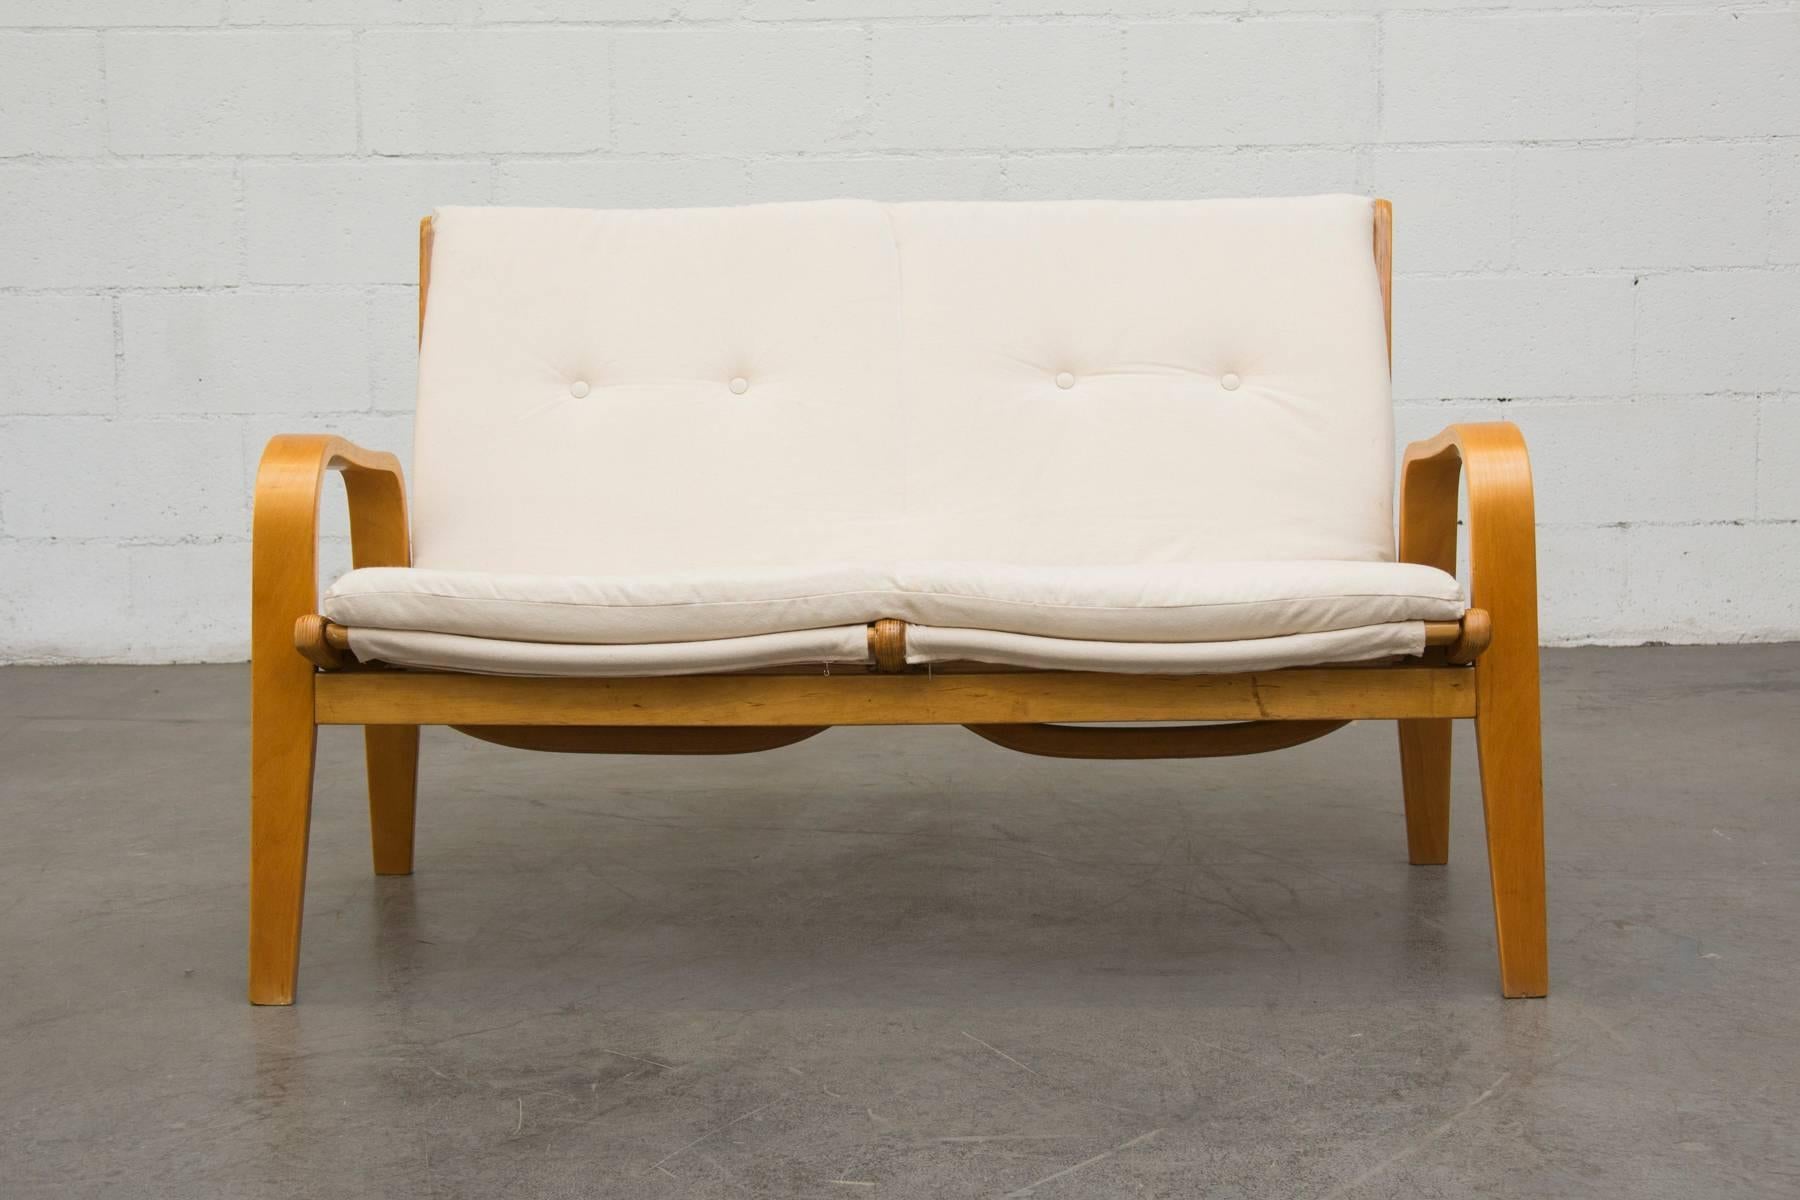 Liegesitz im Stil von Alvar Aalto aus gebogenem Birkenholz mit originaler Umreifung und neuem Kissen aus Naturleinen. Pastoe-Sessel (Modell FB06), entworfen von Cees Braakman für UMS Pastoe in den 1950er Jahren. Loveseat kann leicht von dem